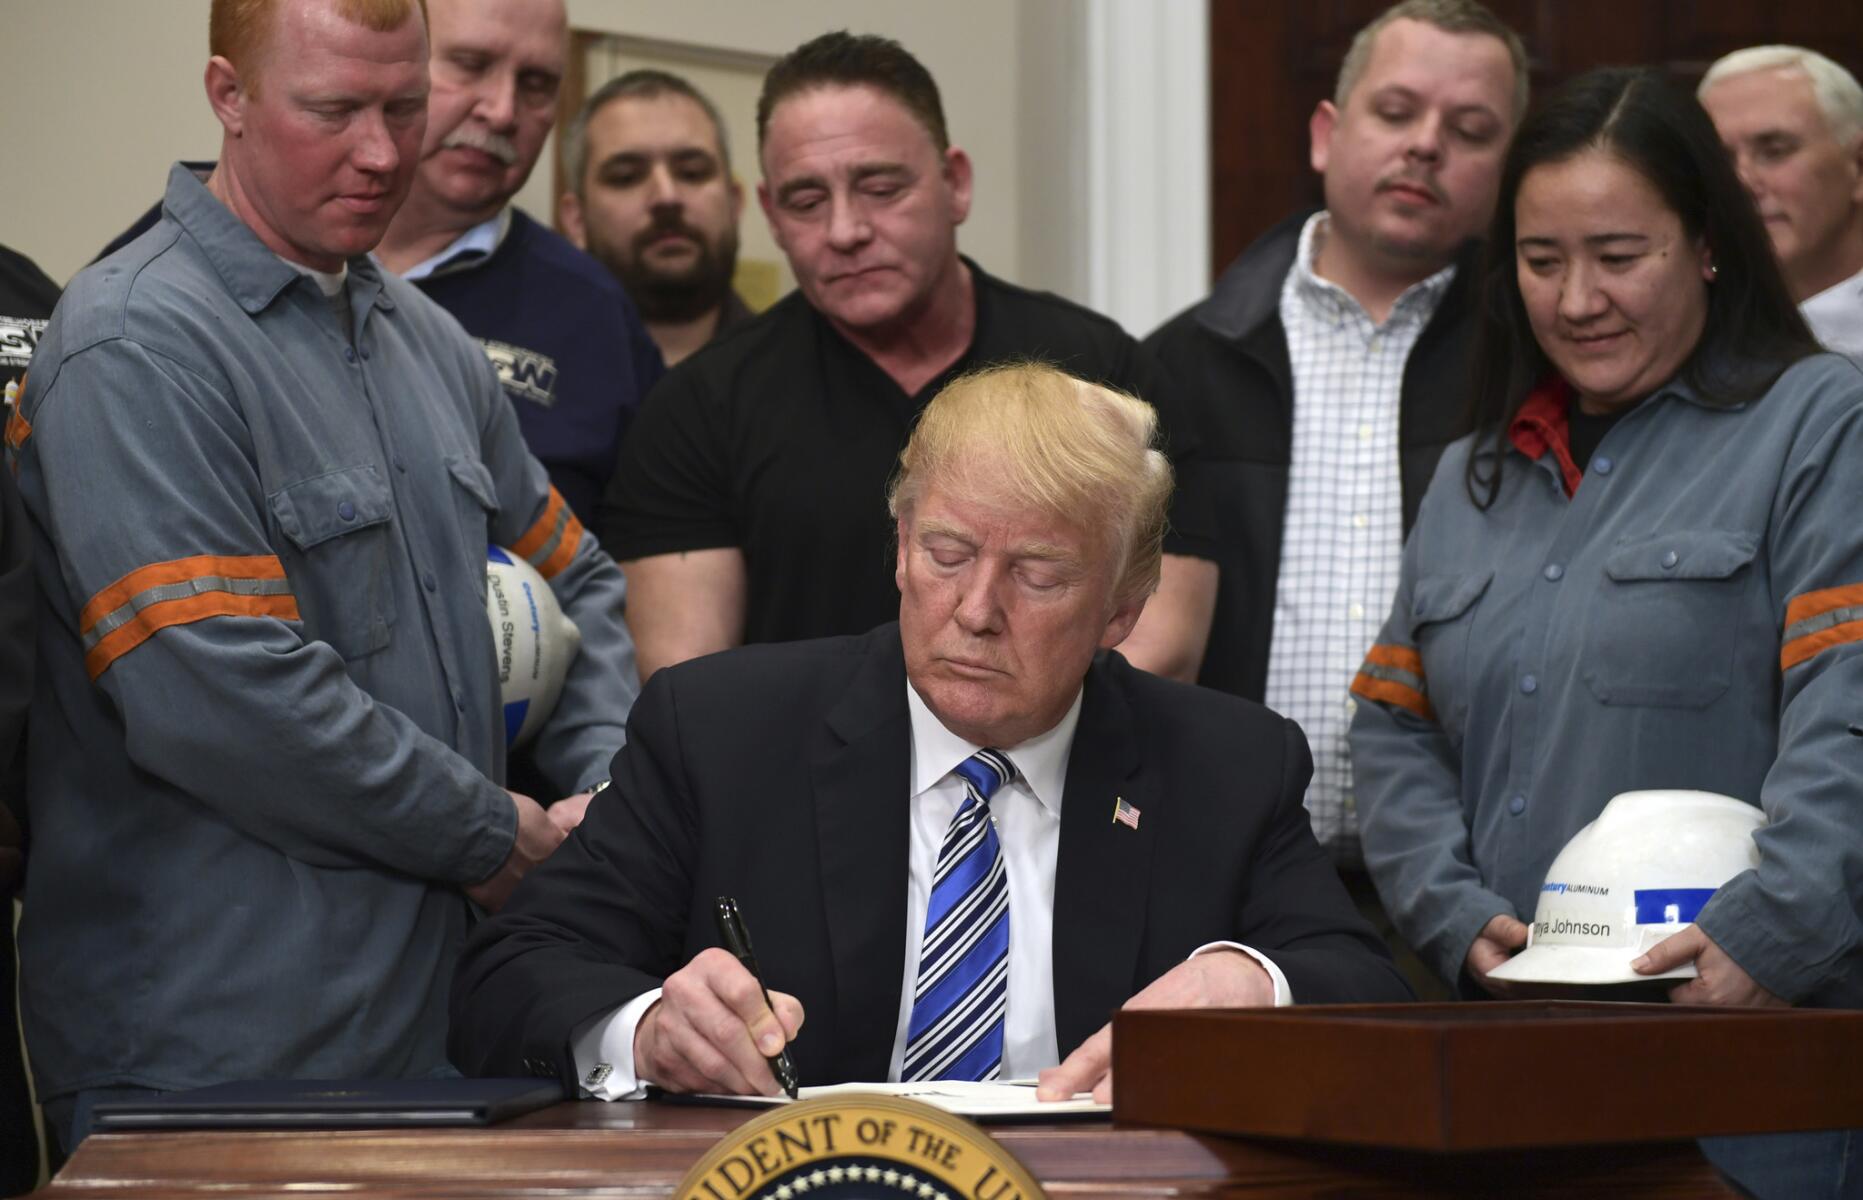 Flanqueado por obreros metalúrgicos, Donald Trump firma el decreto presidencial imponiendo aranceles a la importación de acero y aluminio el 8 de marzo del 2018 en la Casa Blanca. La medida es resistida incluso dentro de su partido Republicano y puede generar una guerra comercial.